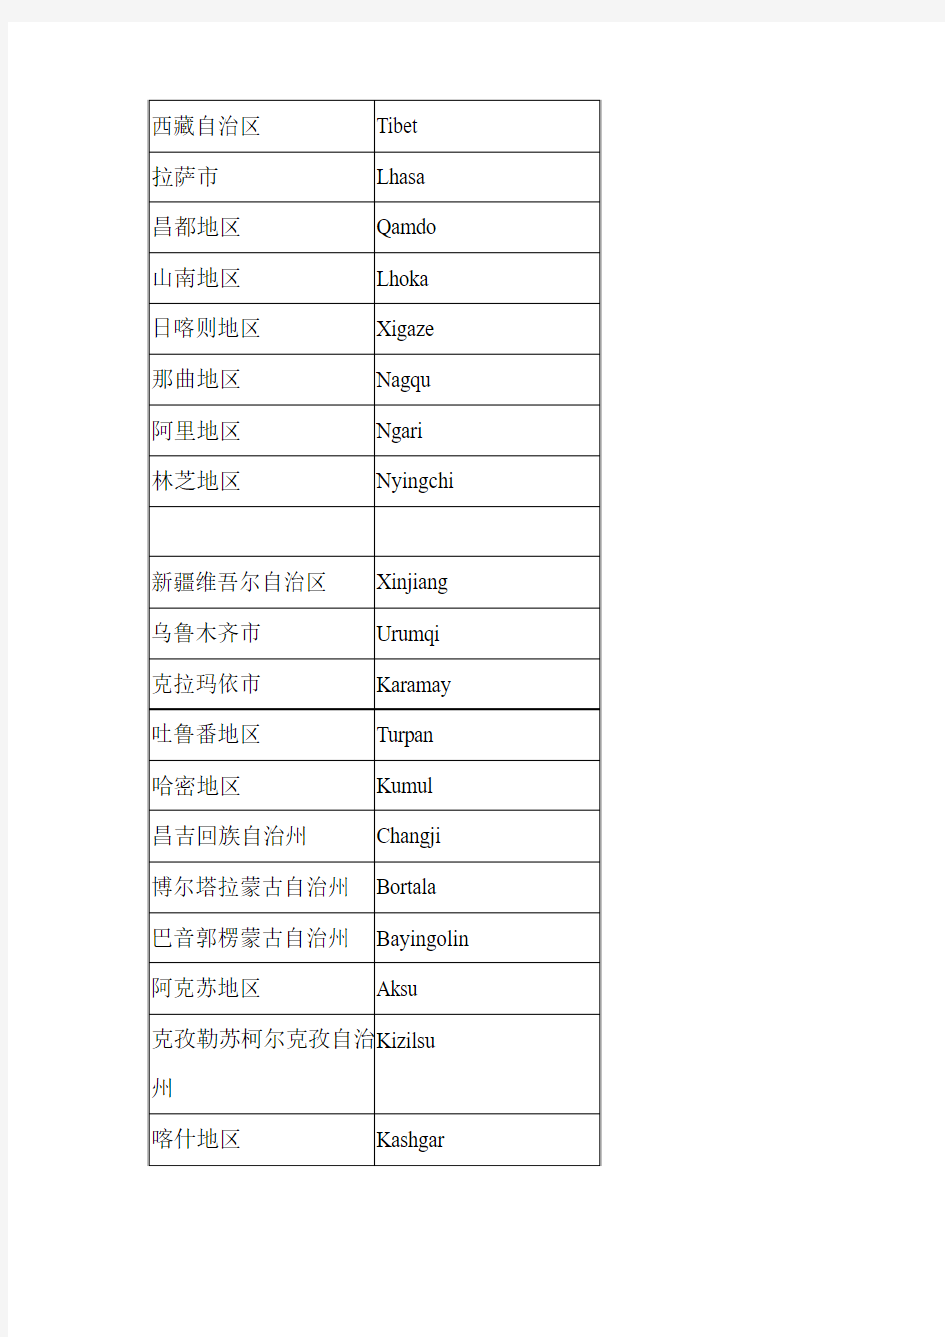 中国地名中英文对照表